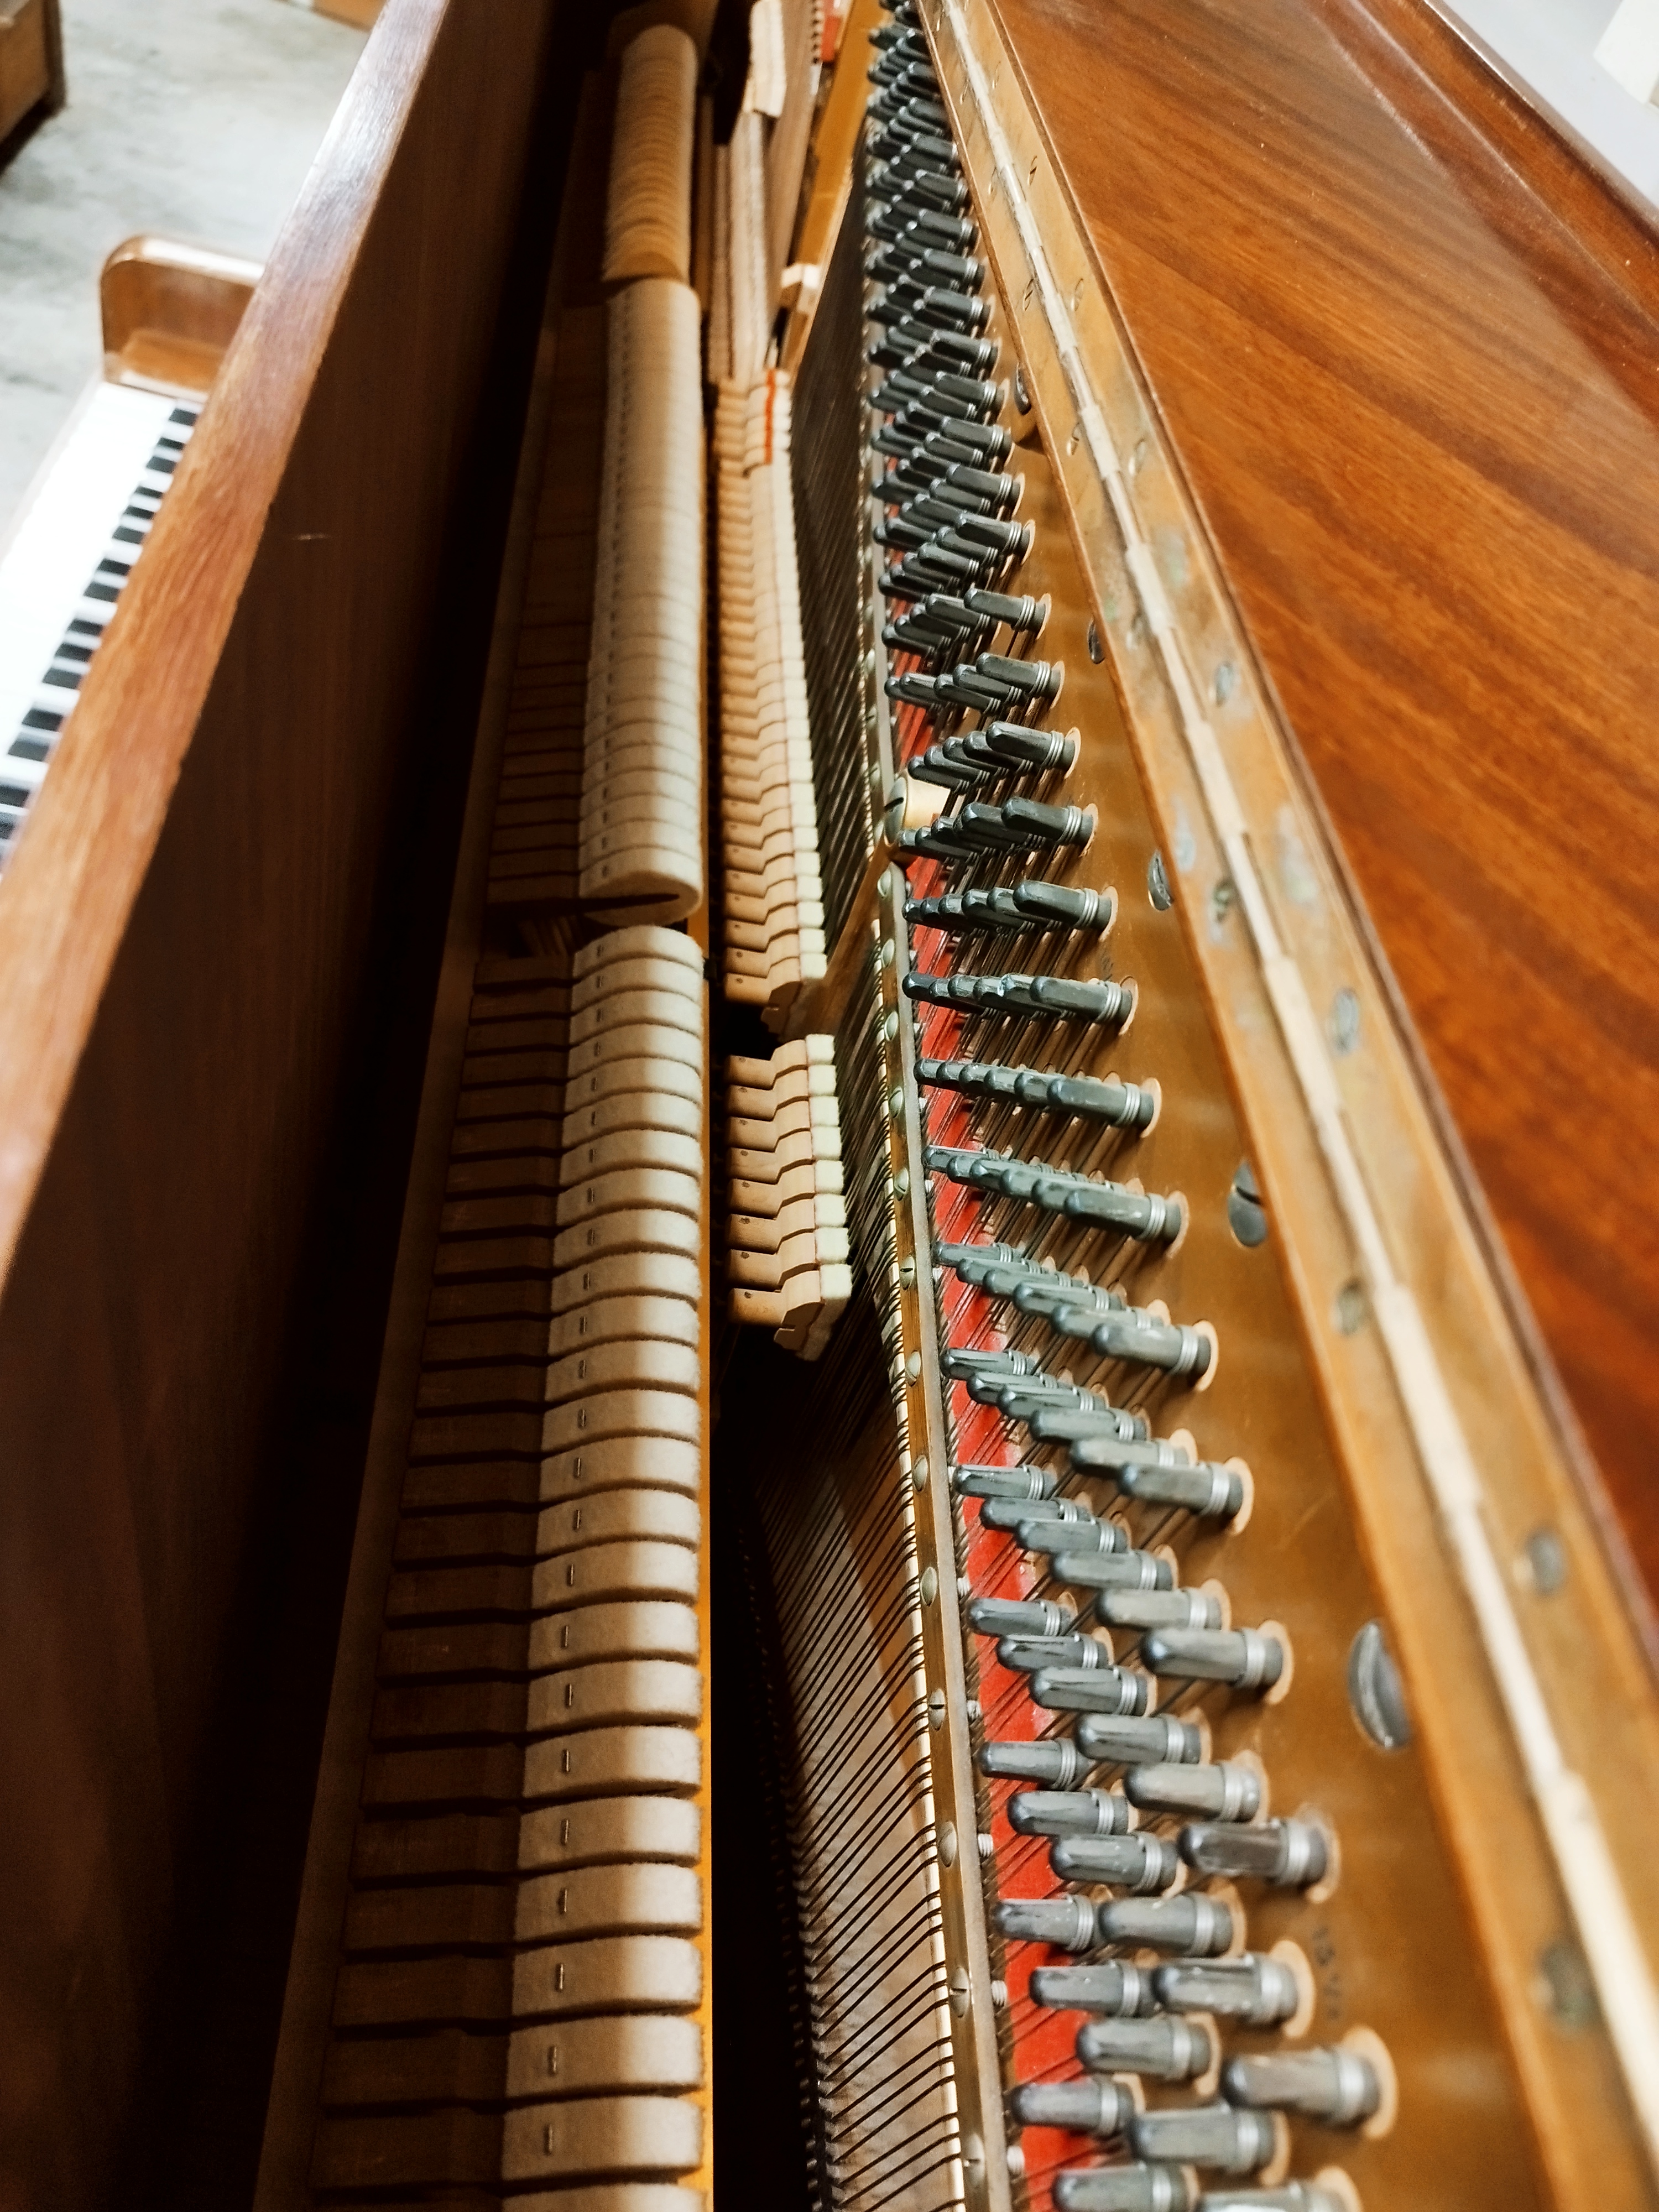 piano droit Pleyel silencieux à acheter sur Montpellier